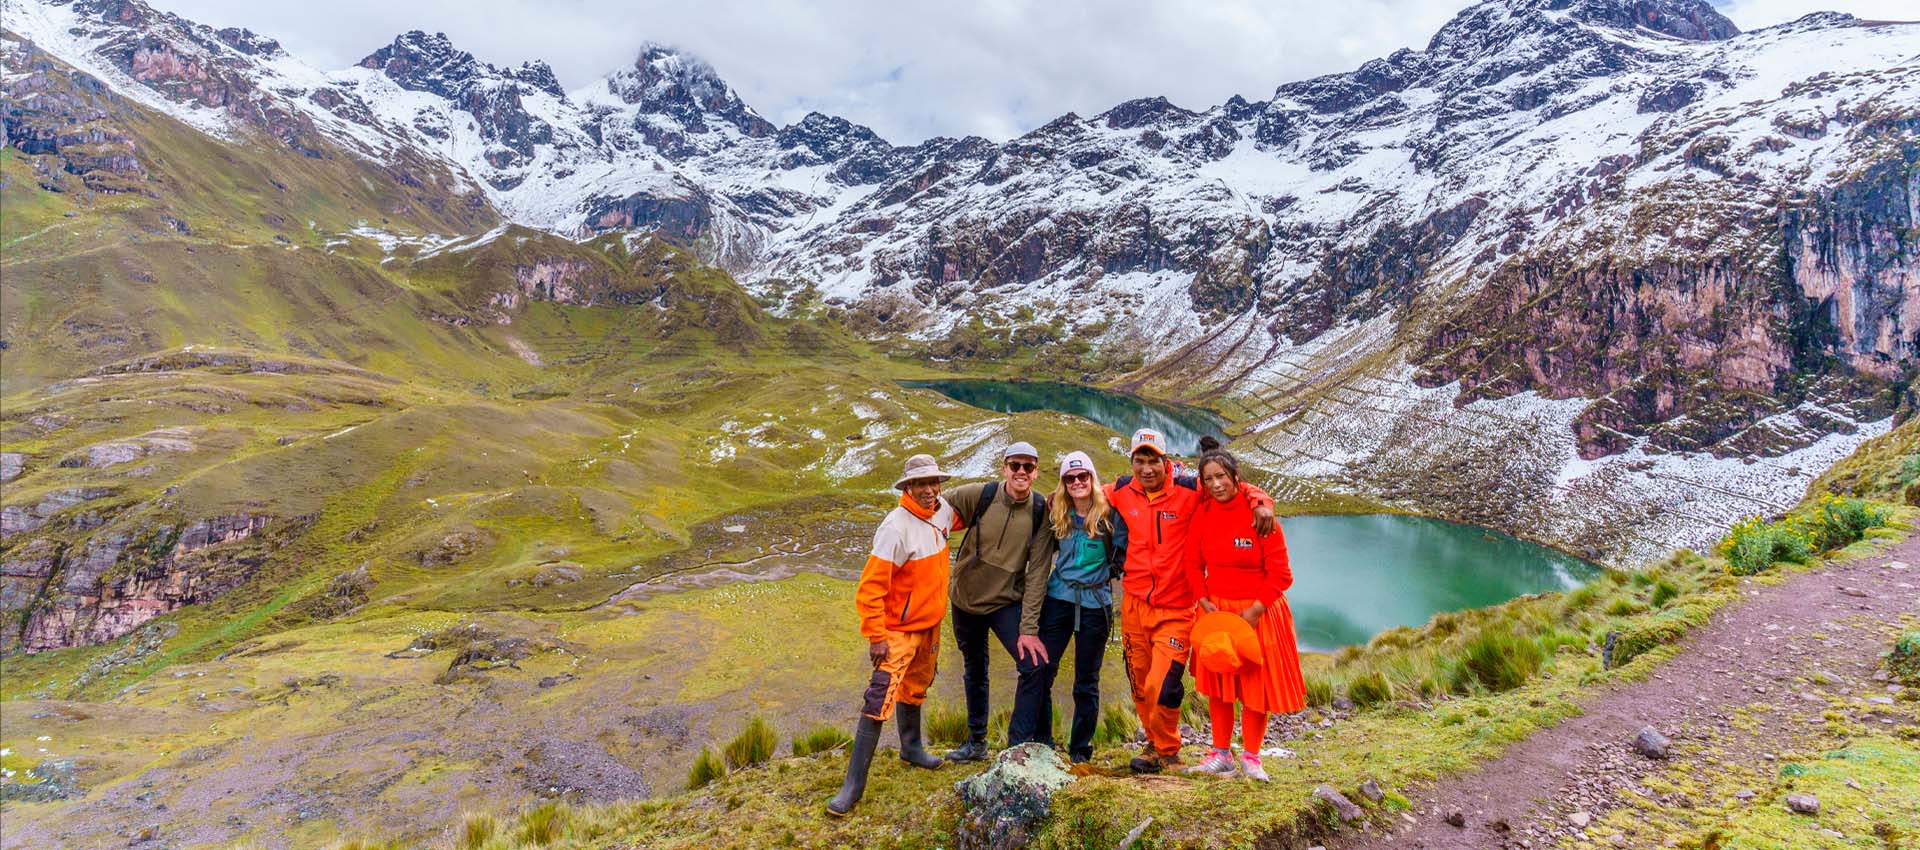 Lares Trek to Machu Picchu 4D/3N - Orange Nation Peru